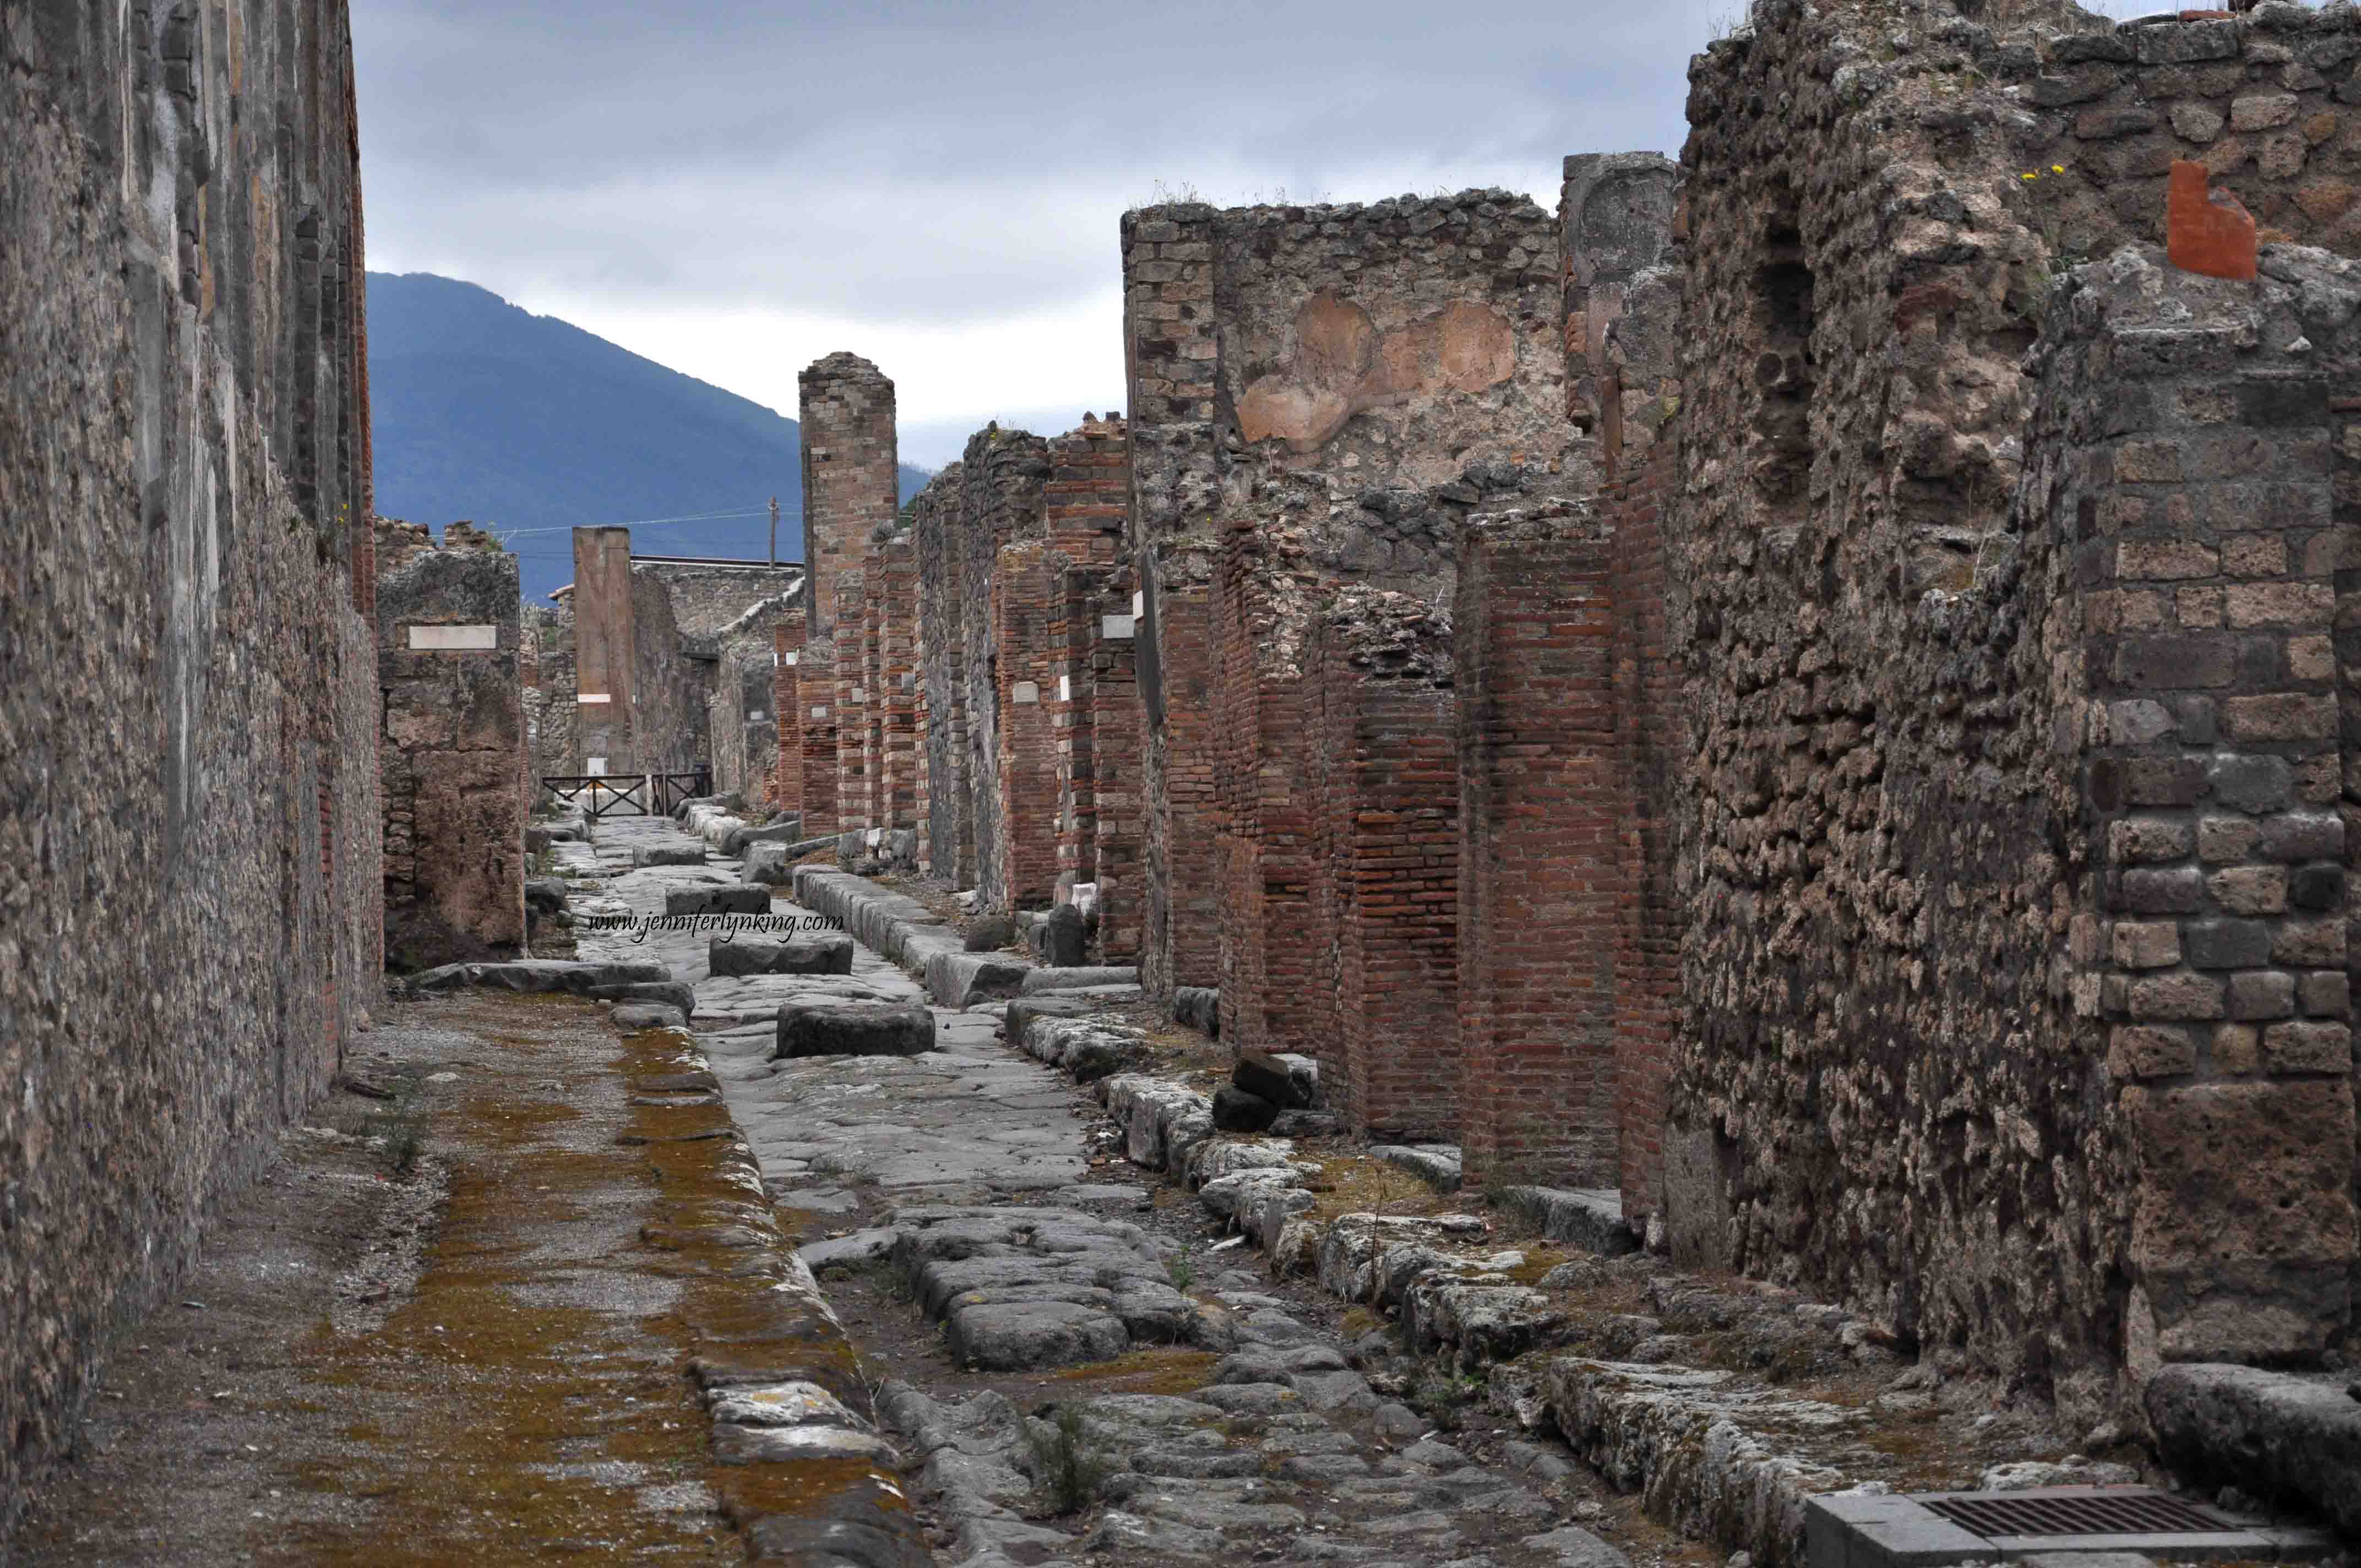 Pompeii, Italy: Thị trấn Pompeii nơi hơn 20.000 người thiệt mạng. Năm 79, núi lửa Vesuvius phun trào, chôn vùi Pompeii trong tro bụi tới hàng trăm năm. 